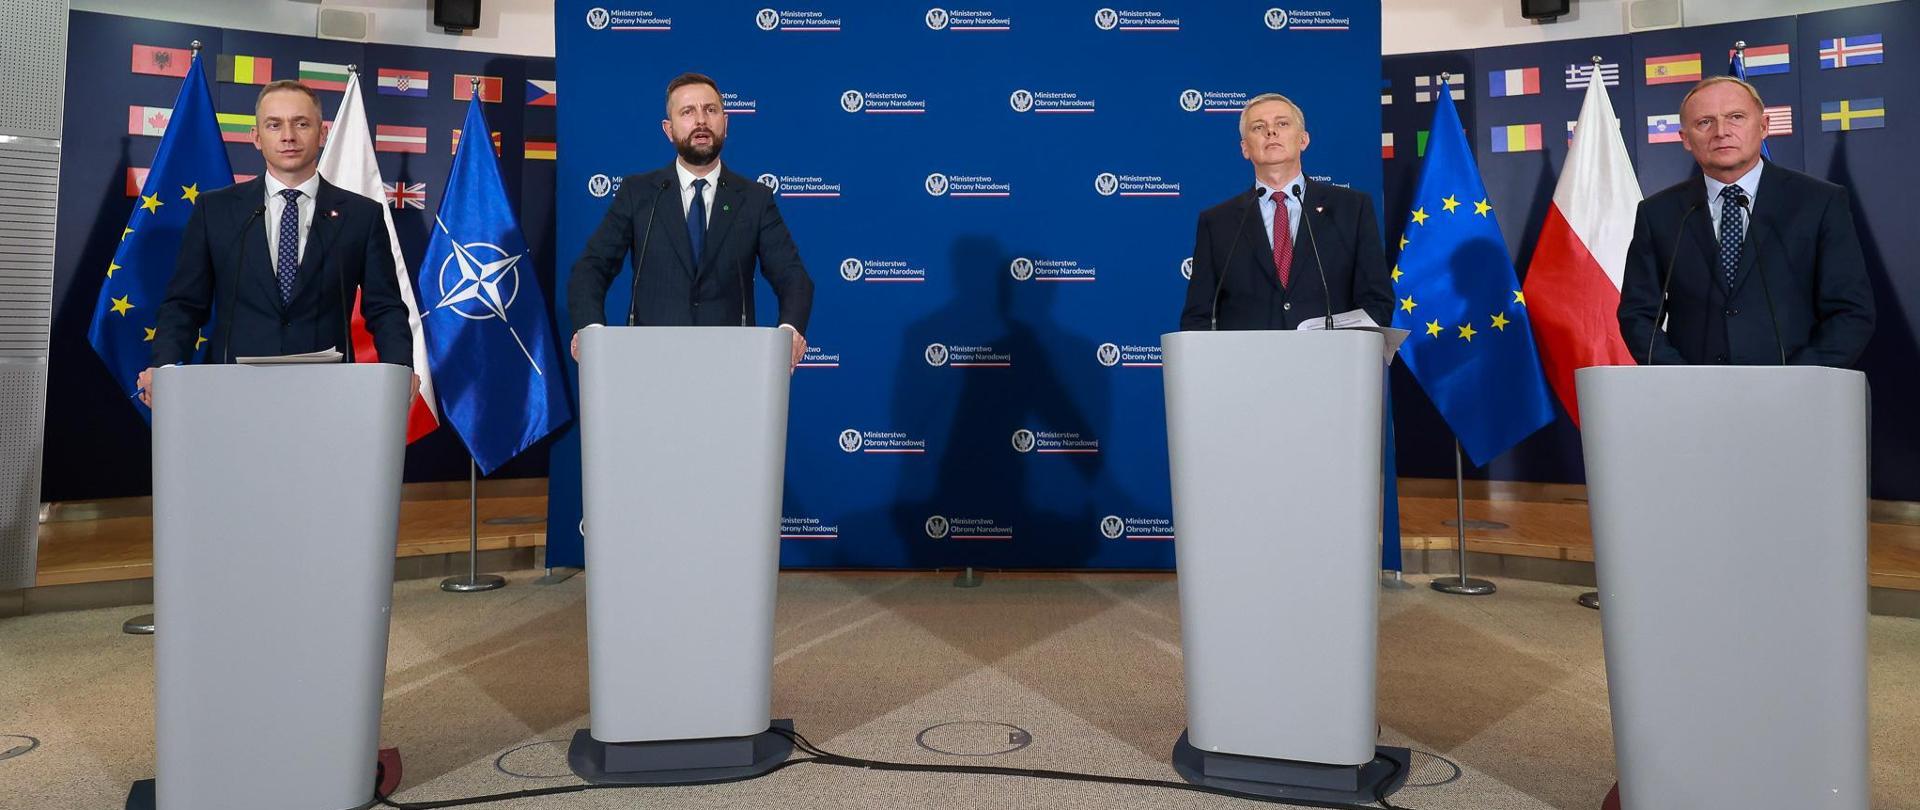 Czterech mężczyzn w ciemnych garniturach przed mównicami z mikrofonami. W głębi na tle granatowej ściany flagi Polski, Unii Europejskiej i NATO.